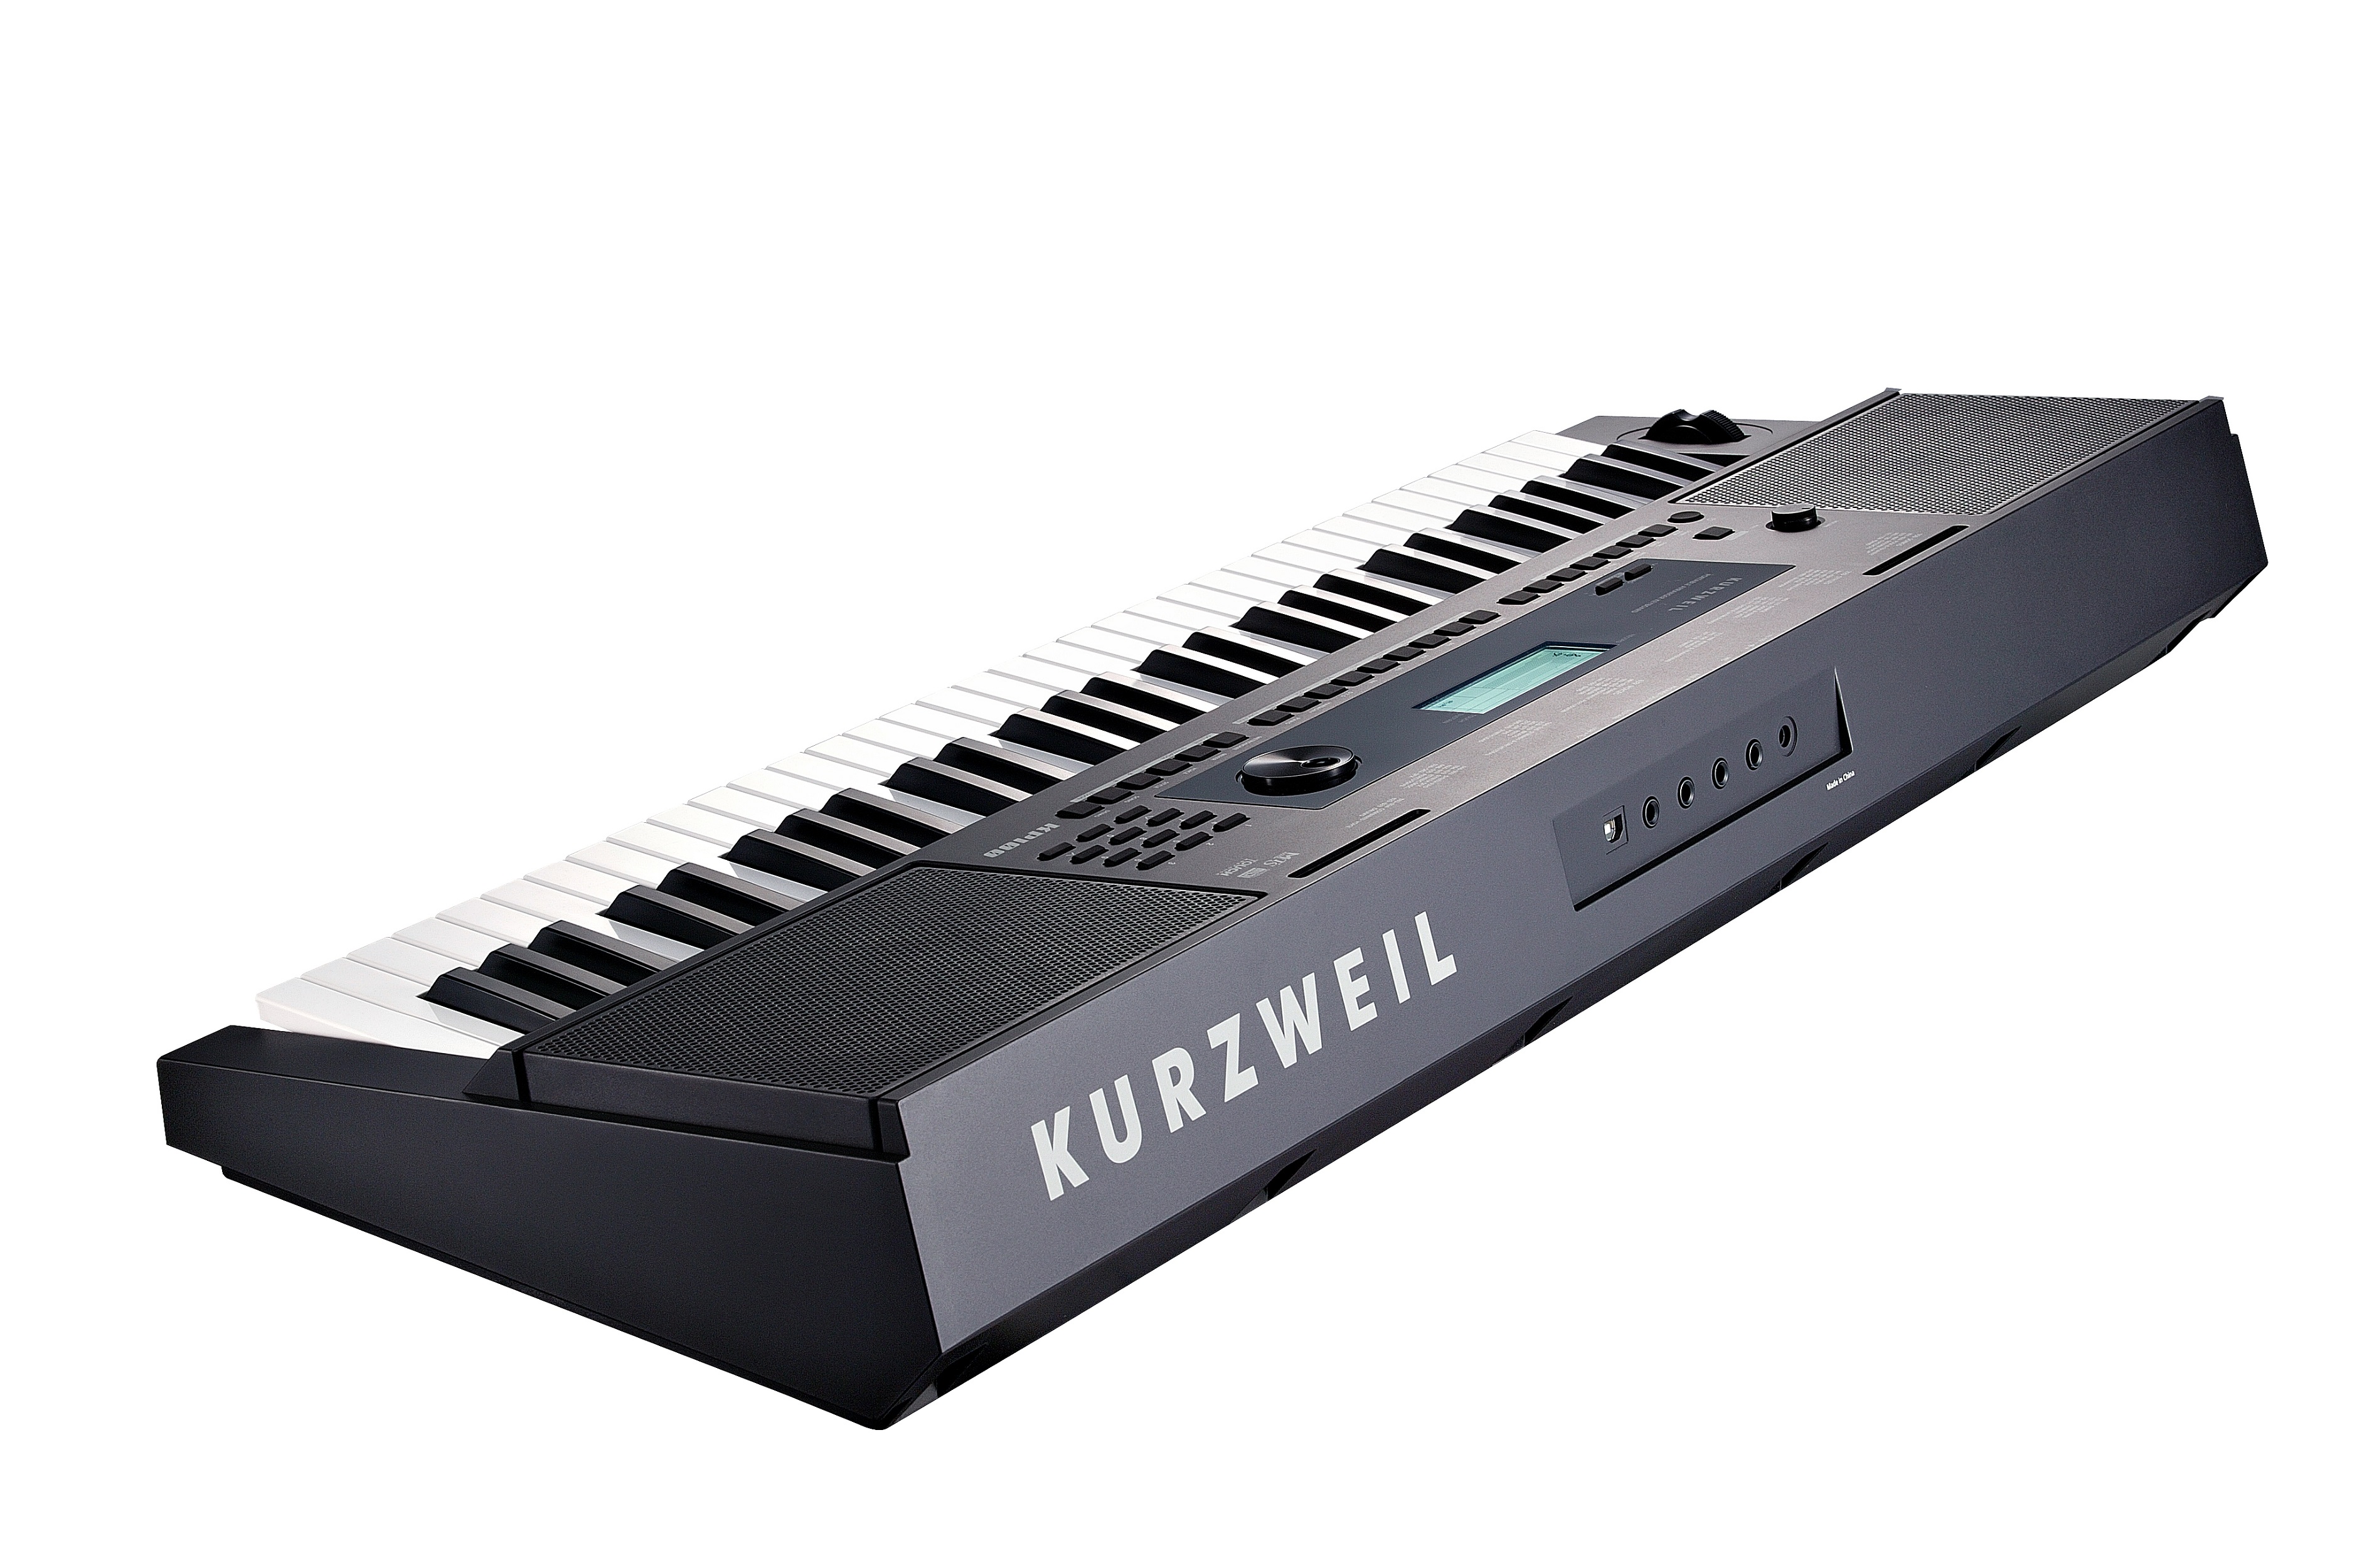 Детальная картинка товара Kurzweil KP100 LB в магазине Музыкальная Тема